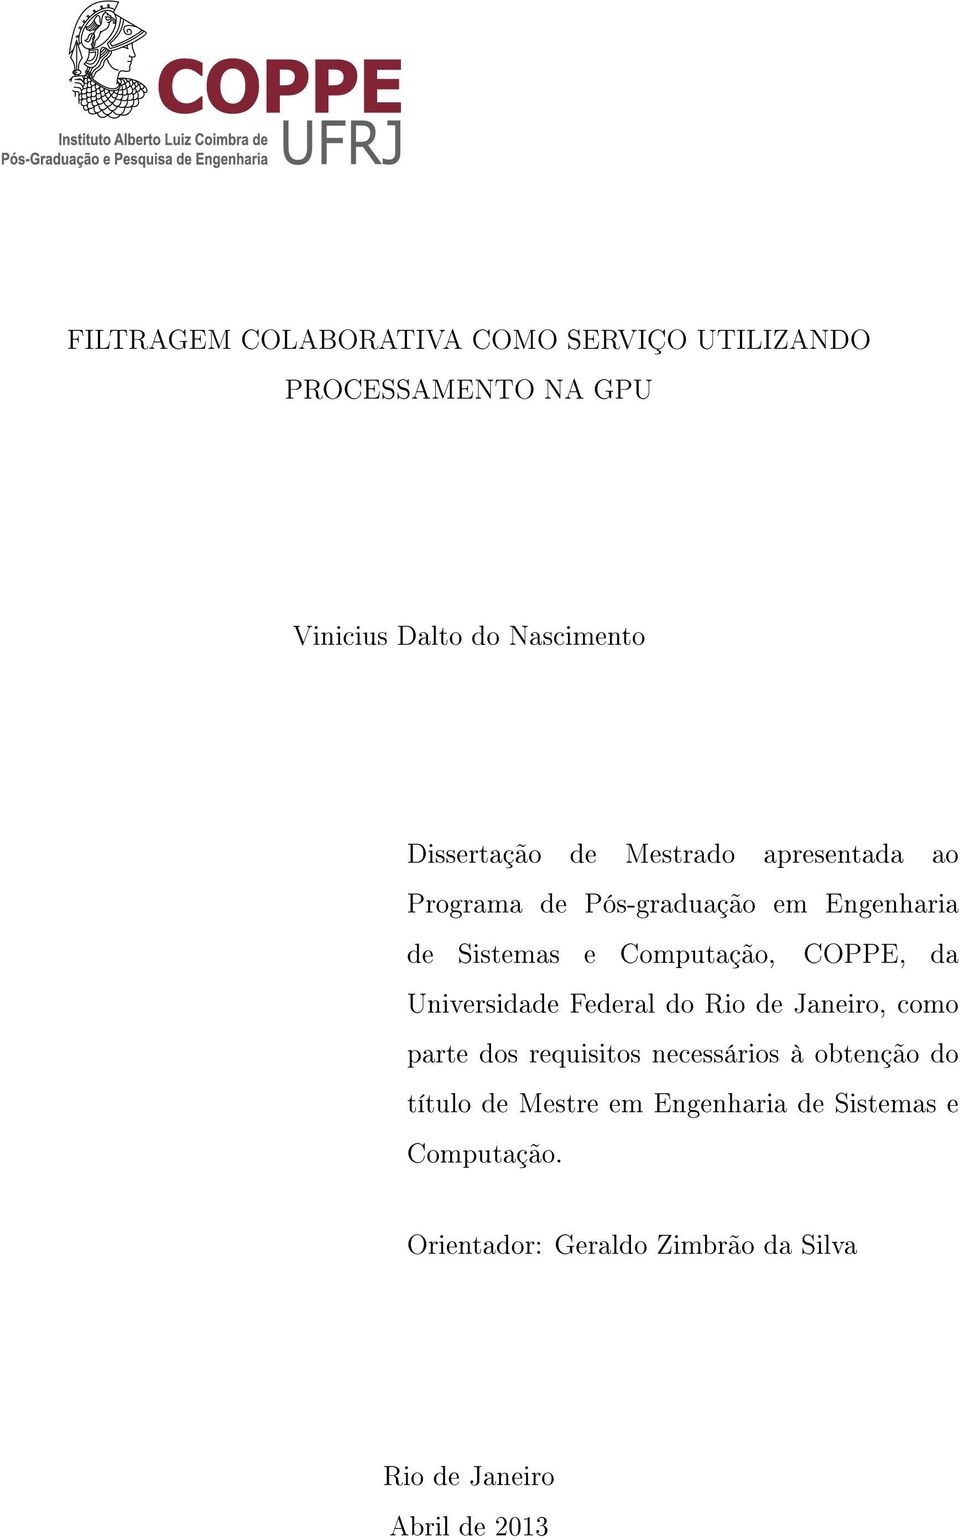 COPPE, da Universidade Federal do Rio de Janeiro, como parte dos requisitos necessários à obtenção do